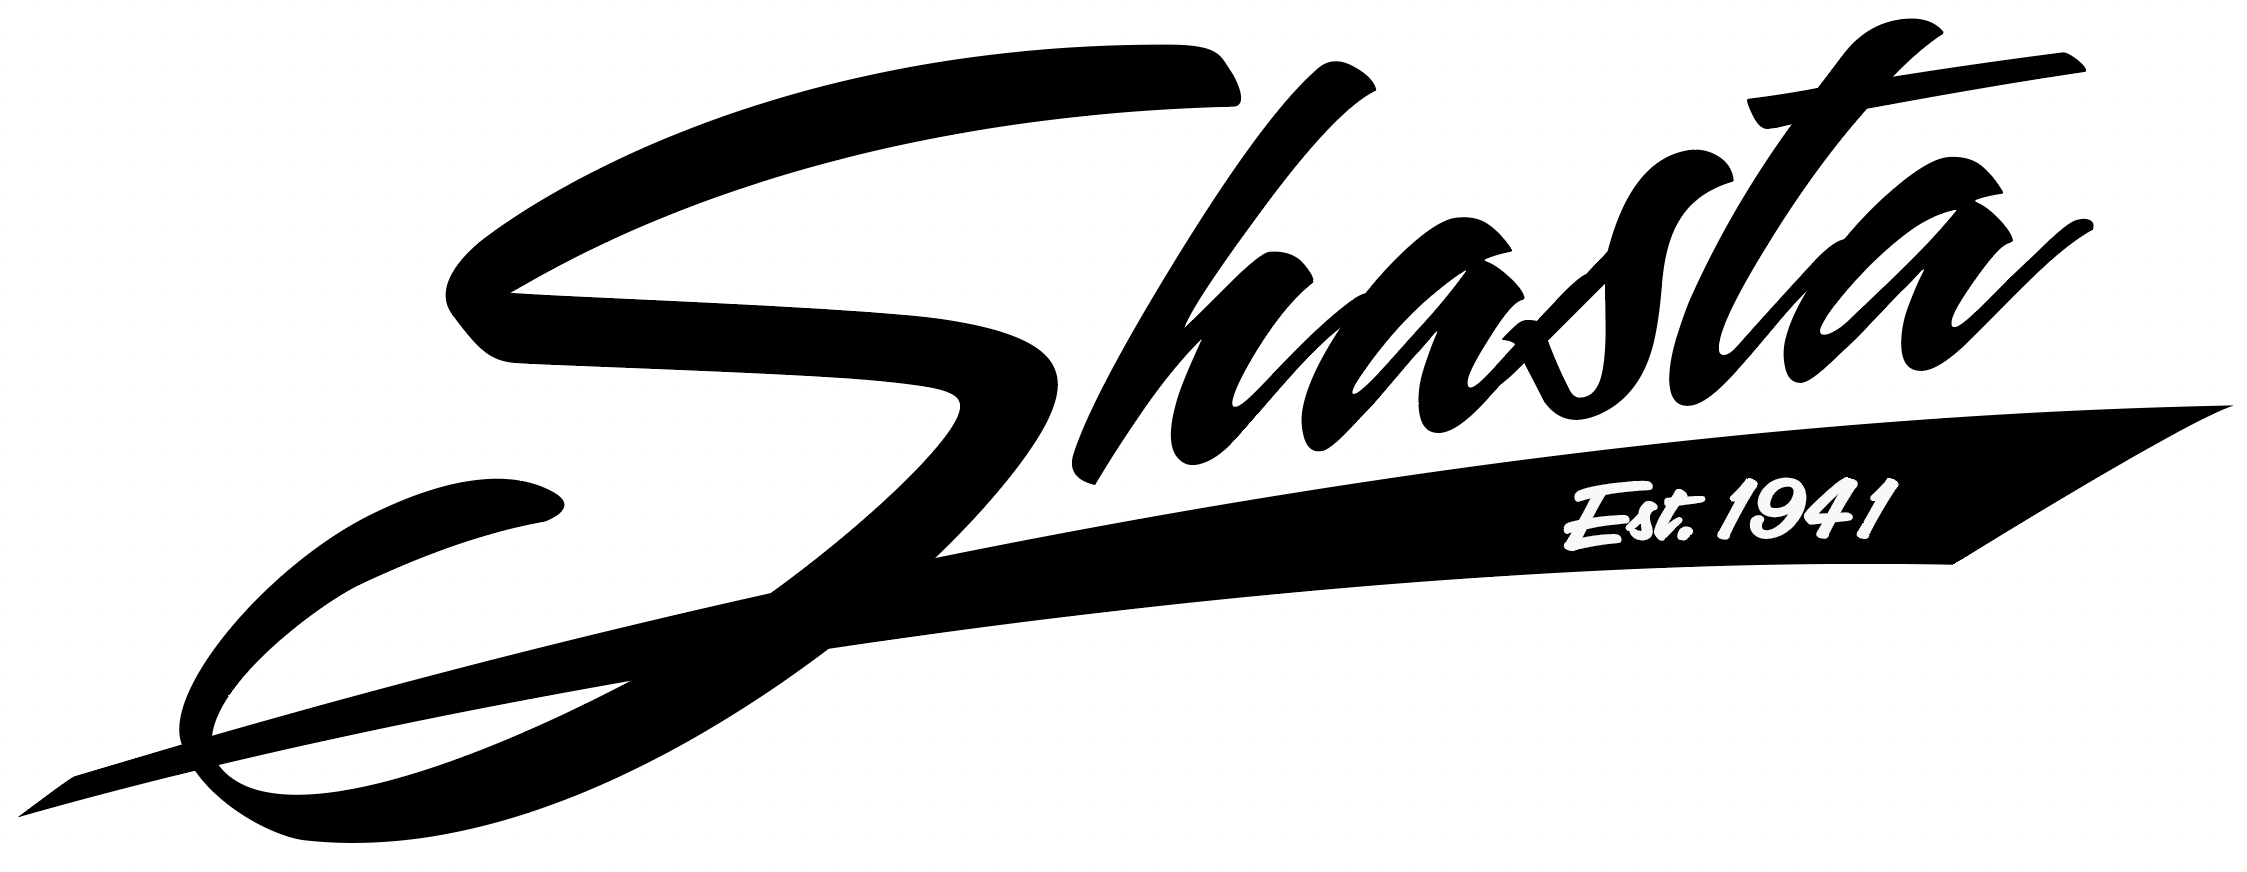 Shop By Manufacturer - Shasta